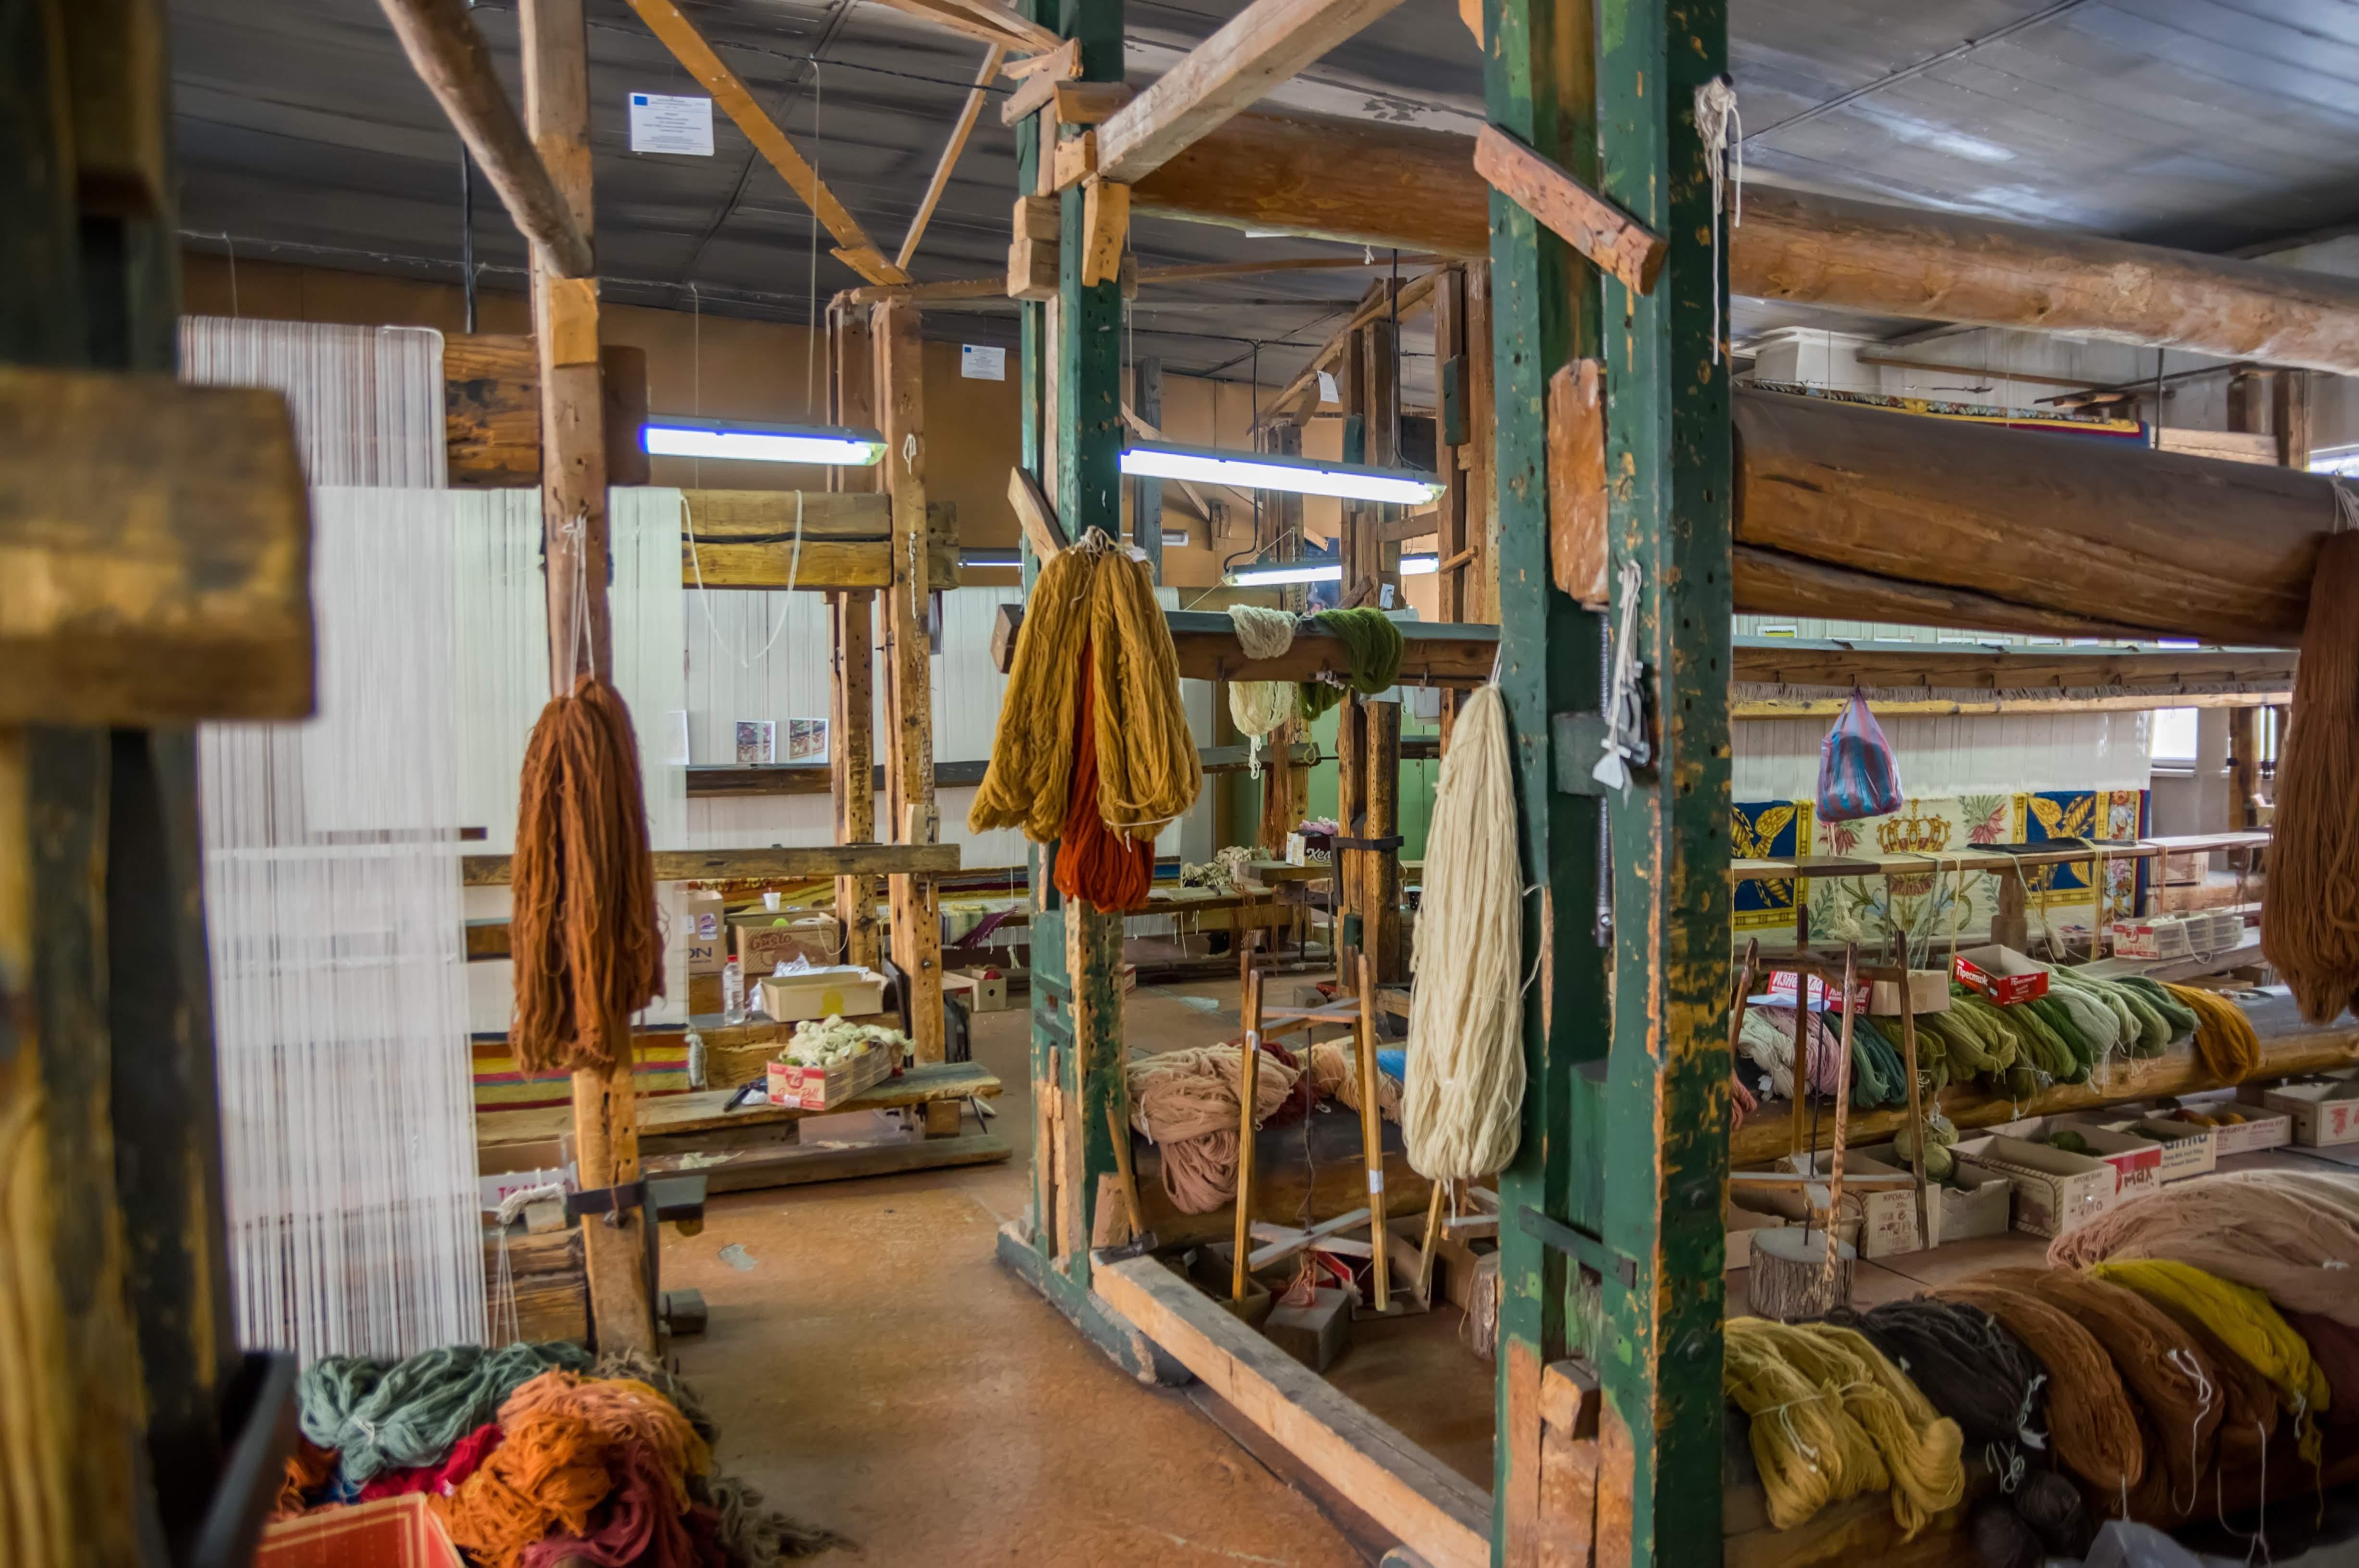 Ribbon von RANKIN RUGS - traditionell handgeknüpft in Bulgarien aus 100 % einheimischer bulgarischer Wolle (~125.000 Knoten pro Quadratmeter)

Alle Teppiche werden in einer kleinen familiengeführten Werkstatt in Bulgarien von den letzten